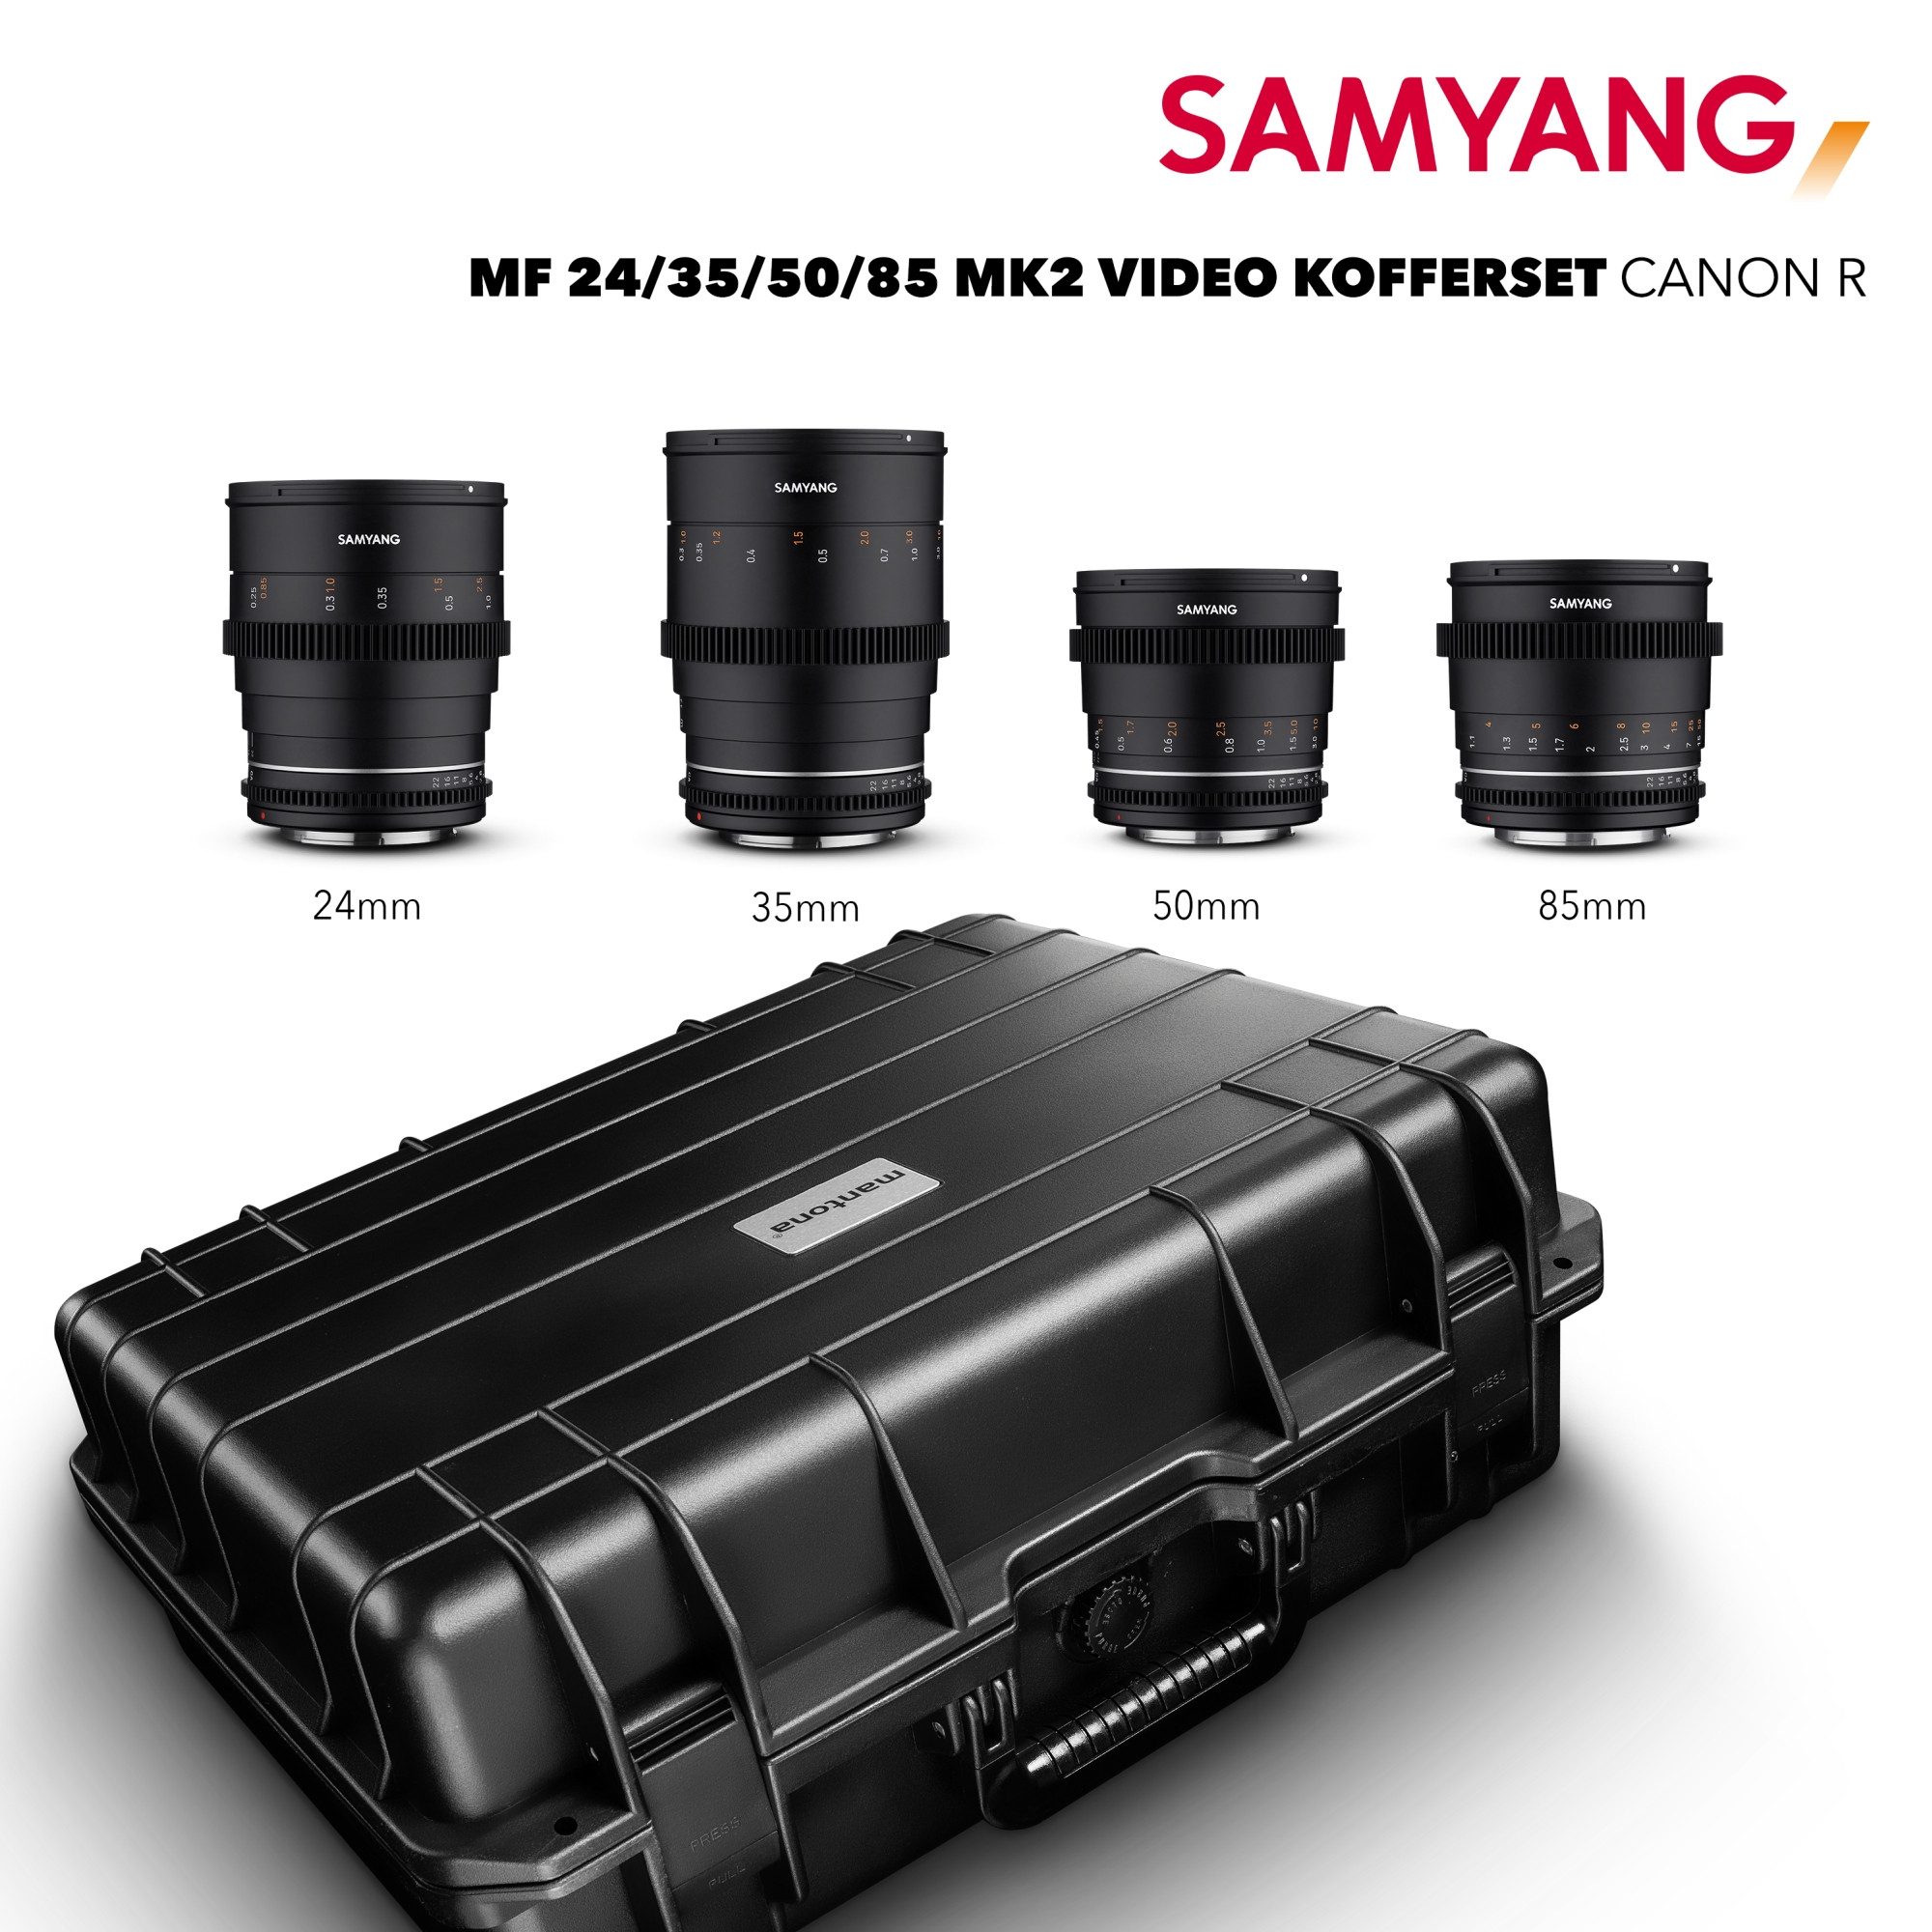 Samyang MF 24/35/50/85 MK2 VDSLR Kofferset Canon R Objektiv